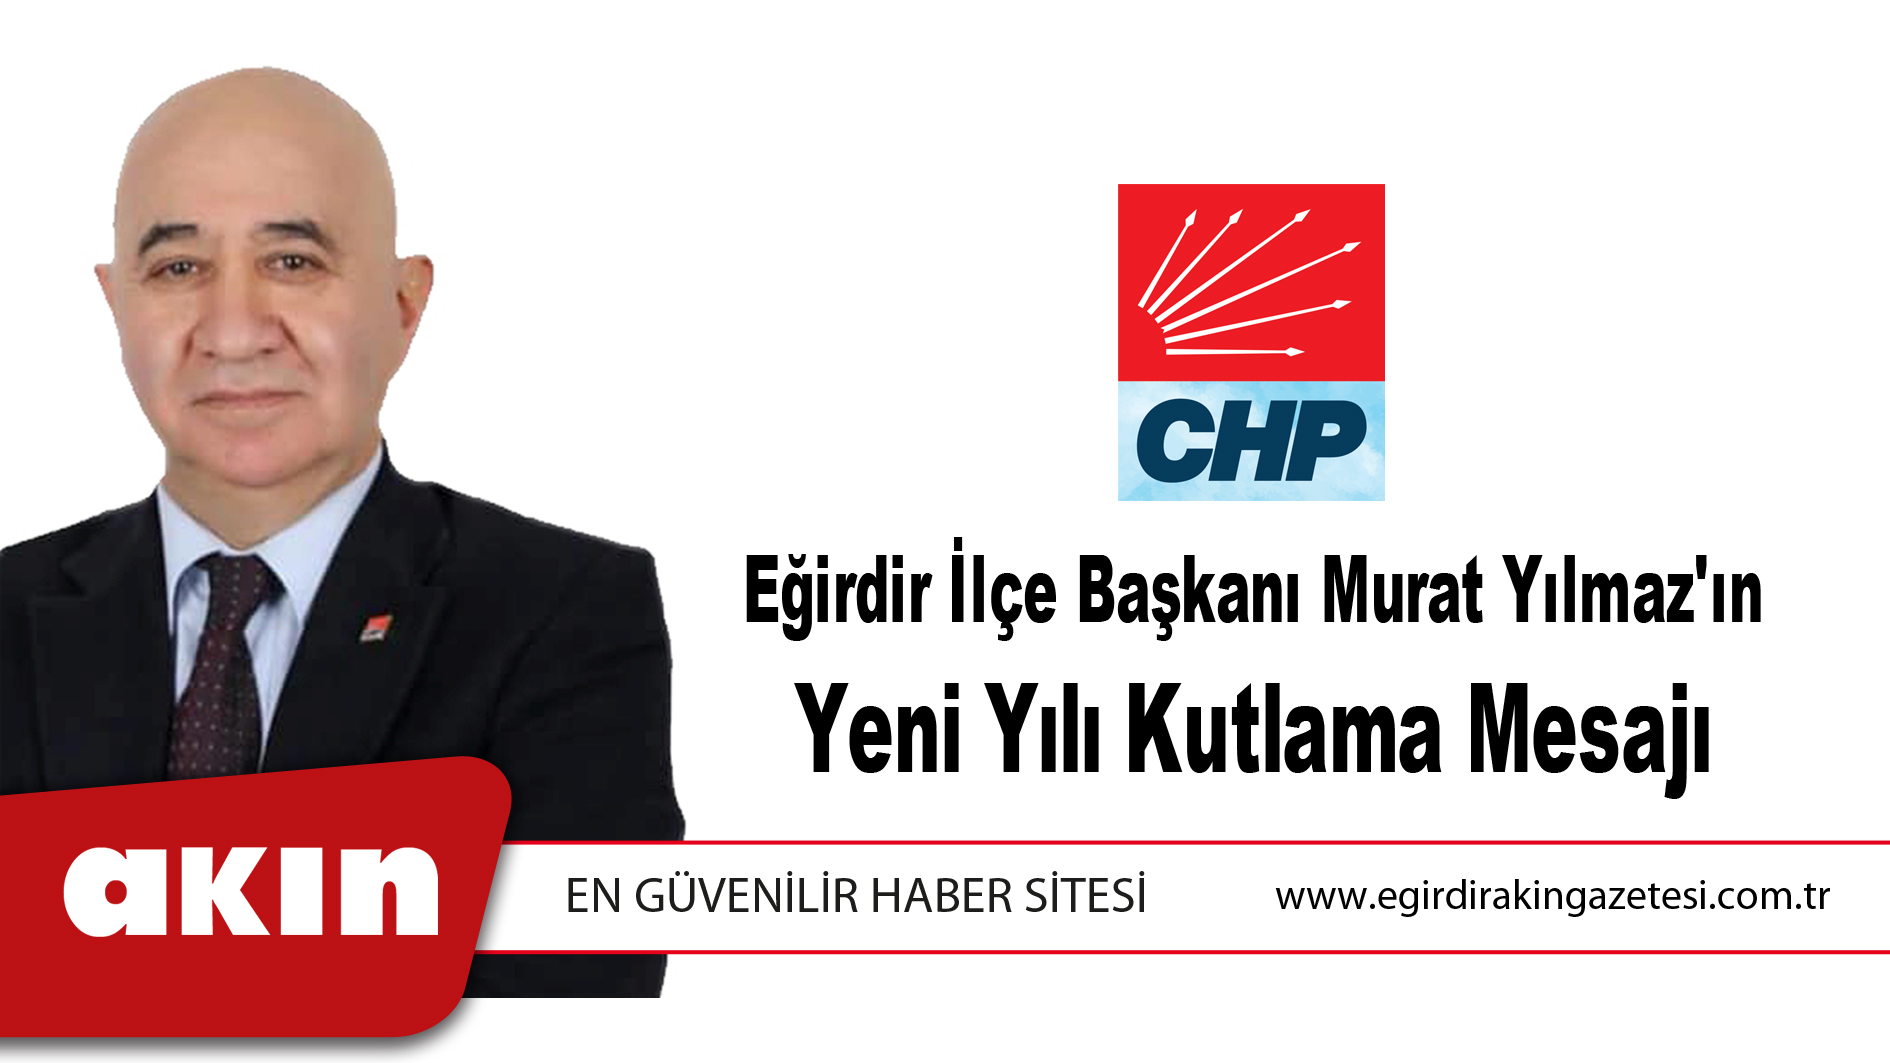 CHP Eğirdir İlçe Başkanı Murat Yılmaz'ın Yeni Yılı Kutlama Mesajı	